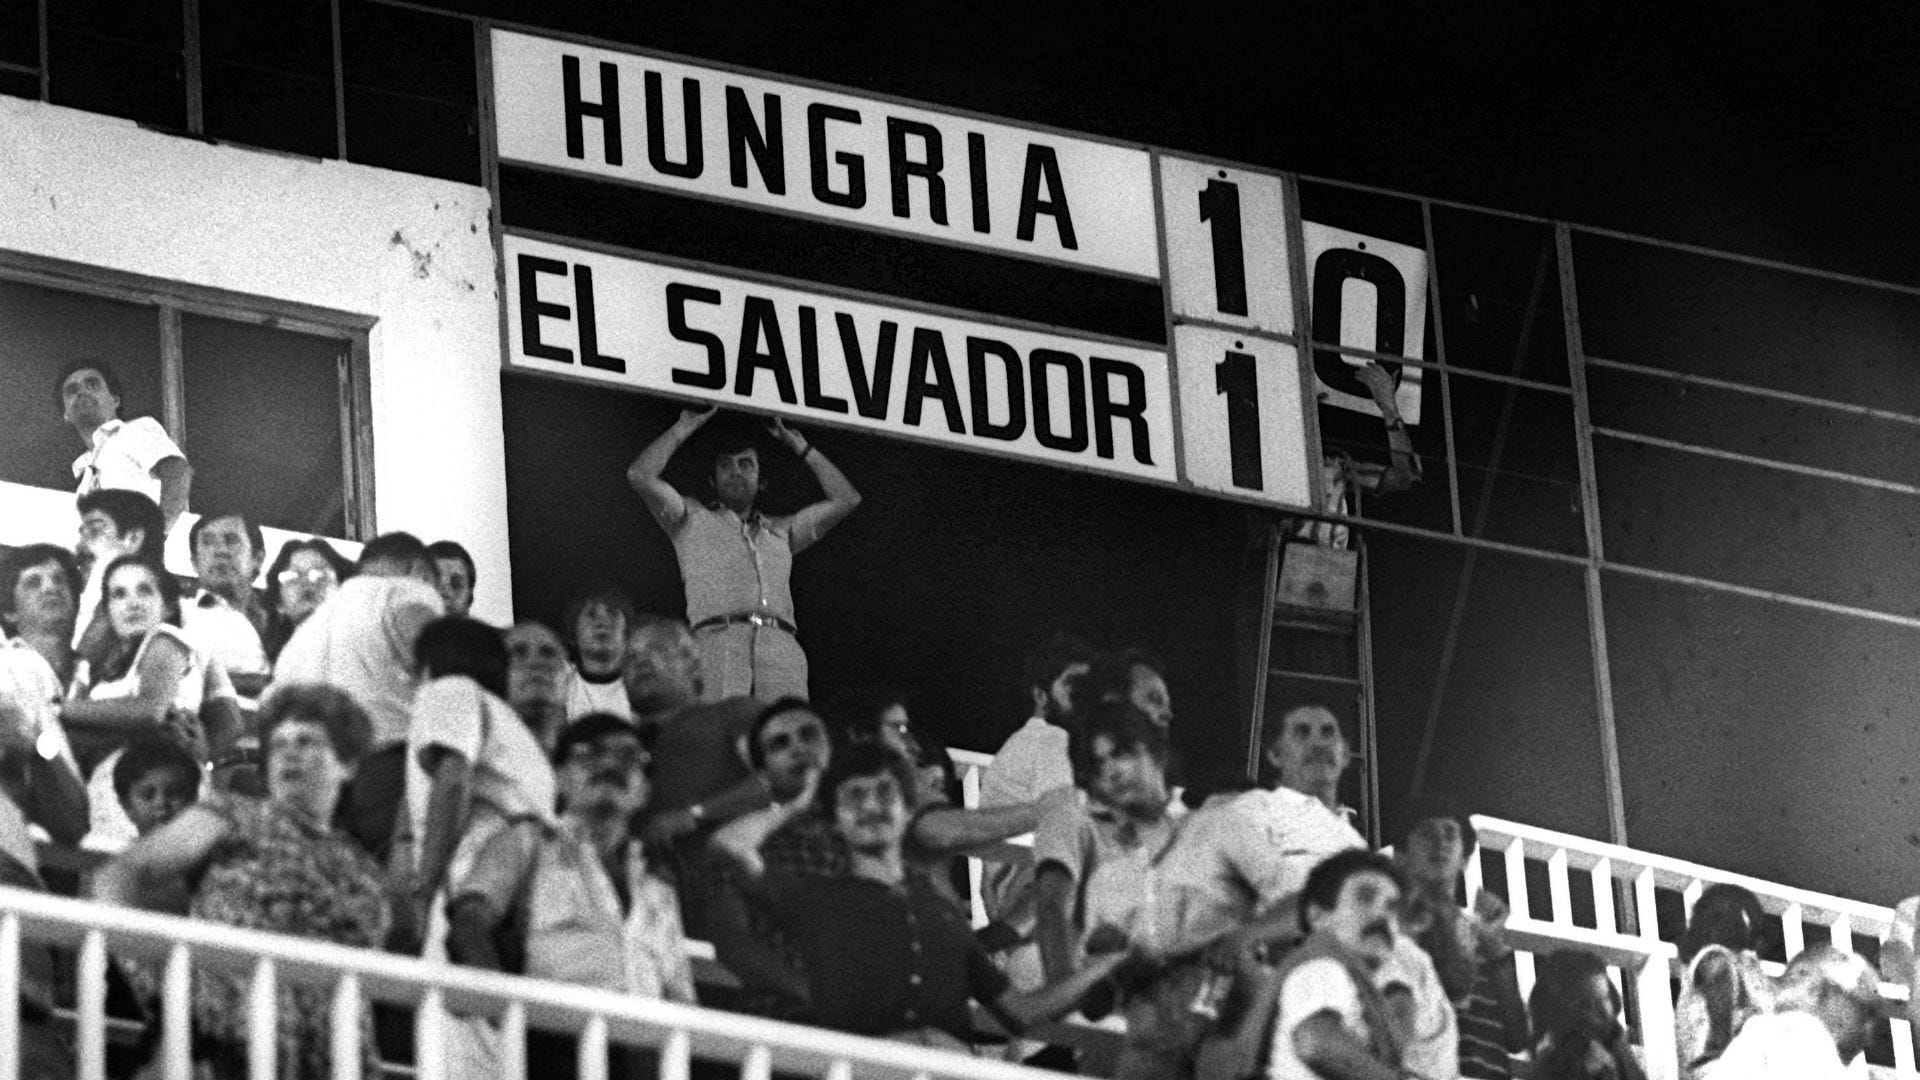 Hungary El Salvador FIFA World Cup 1982